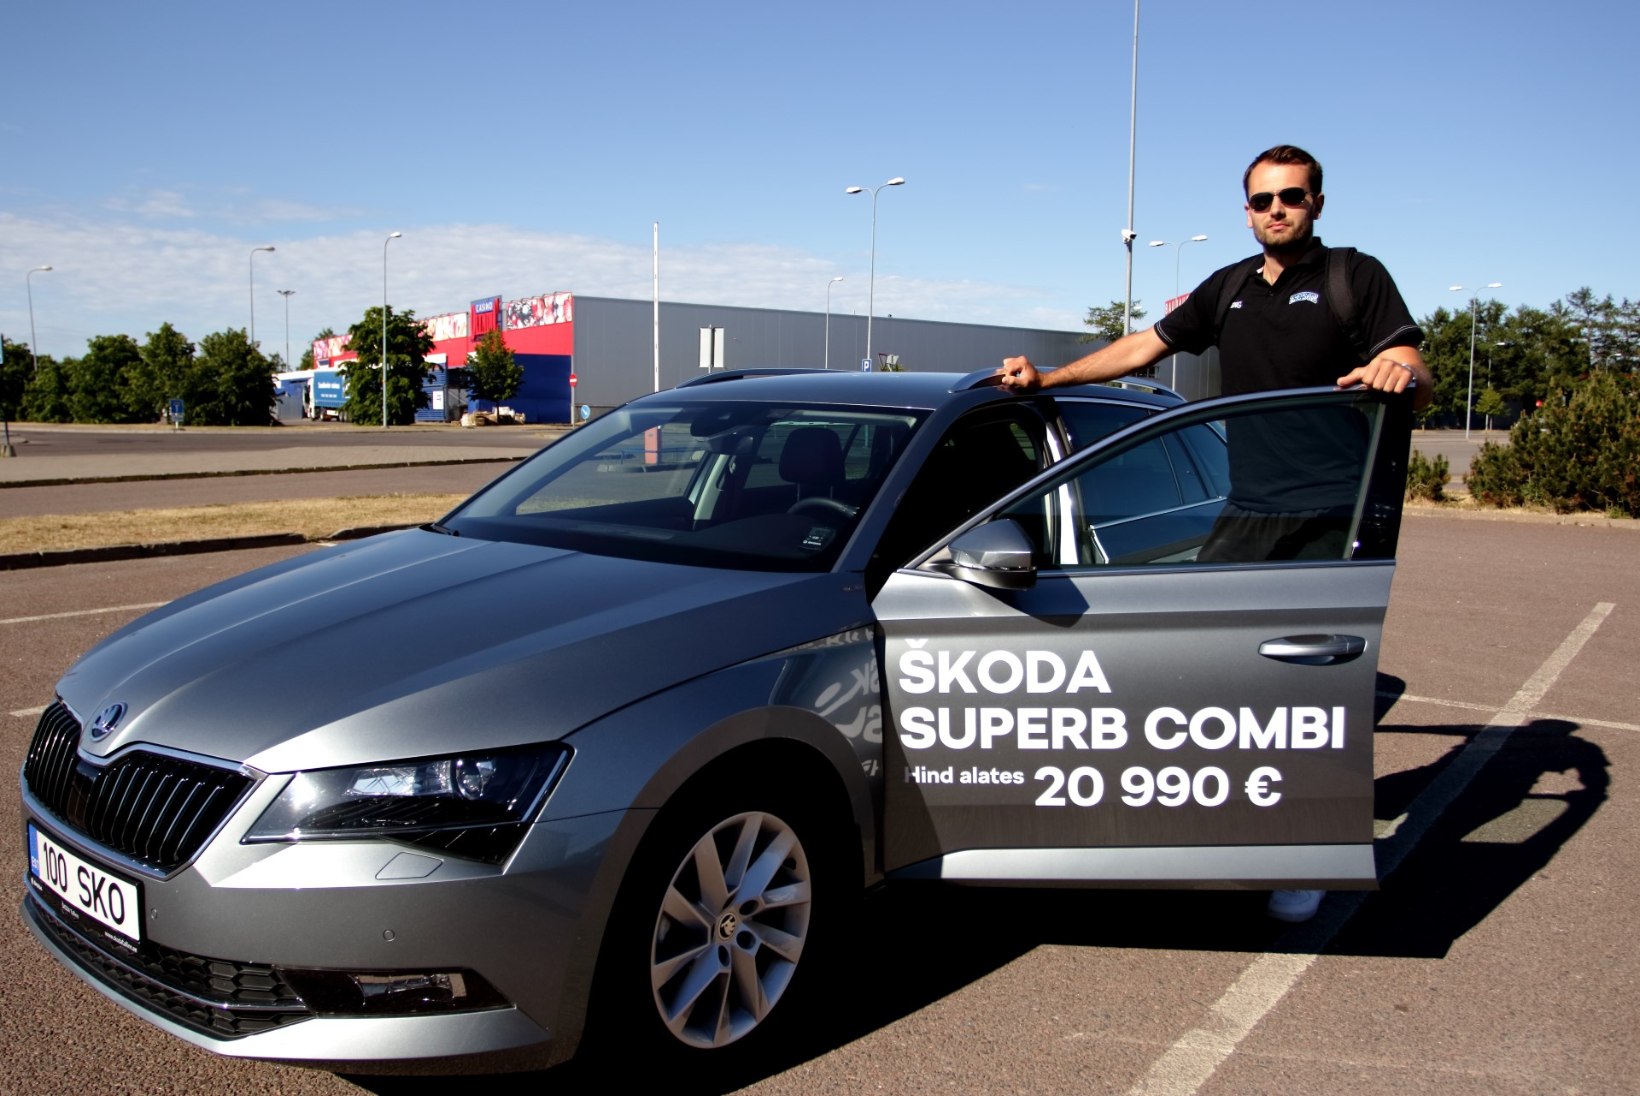 FOTOD | Eesti korvpallikoondislased tulid esimesele treeningule uute autodega